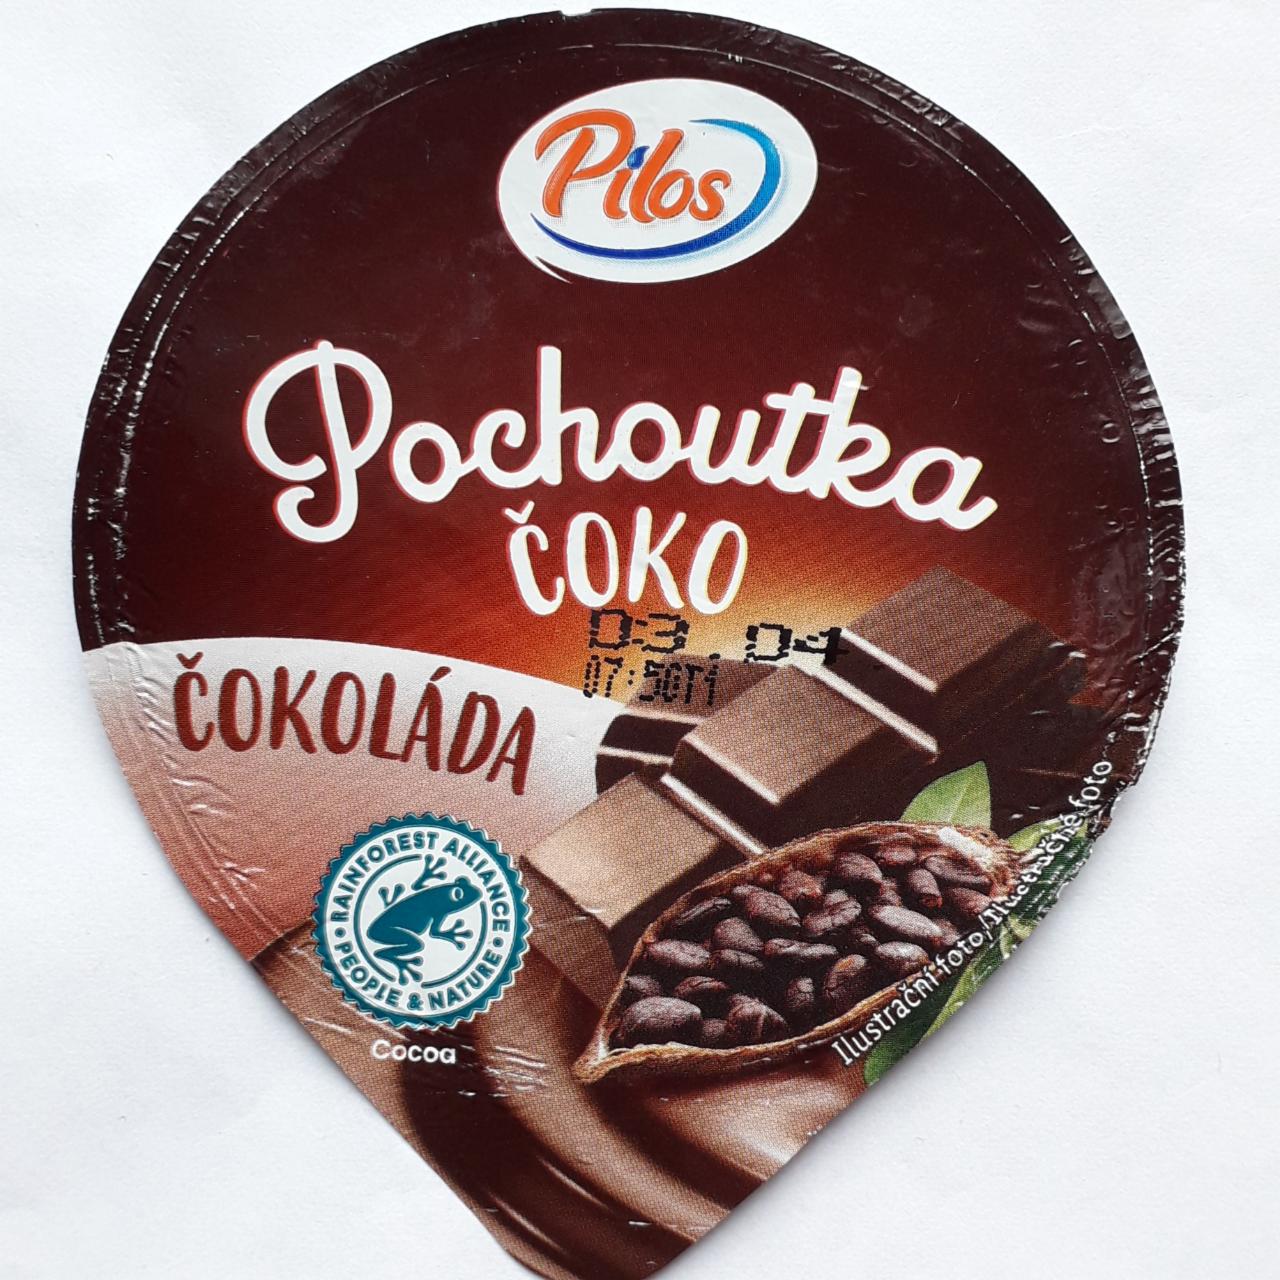 Fotografie - Pochoutka čoko čokoláda Pilos